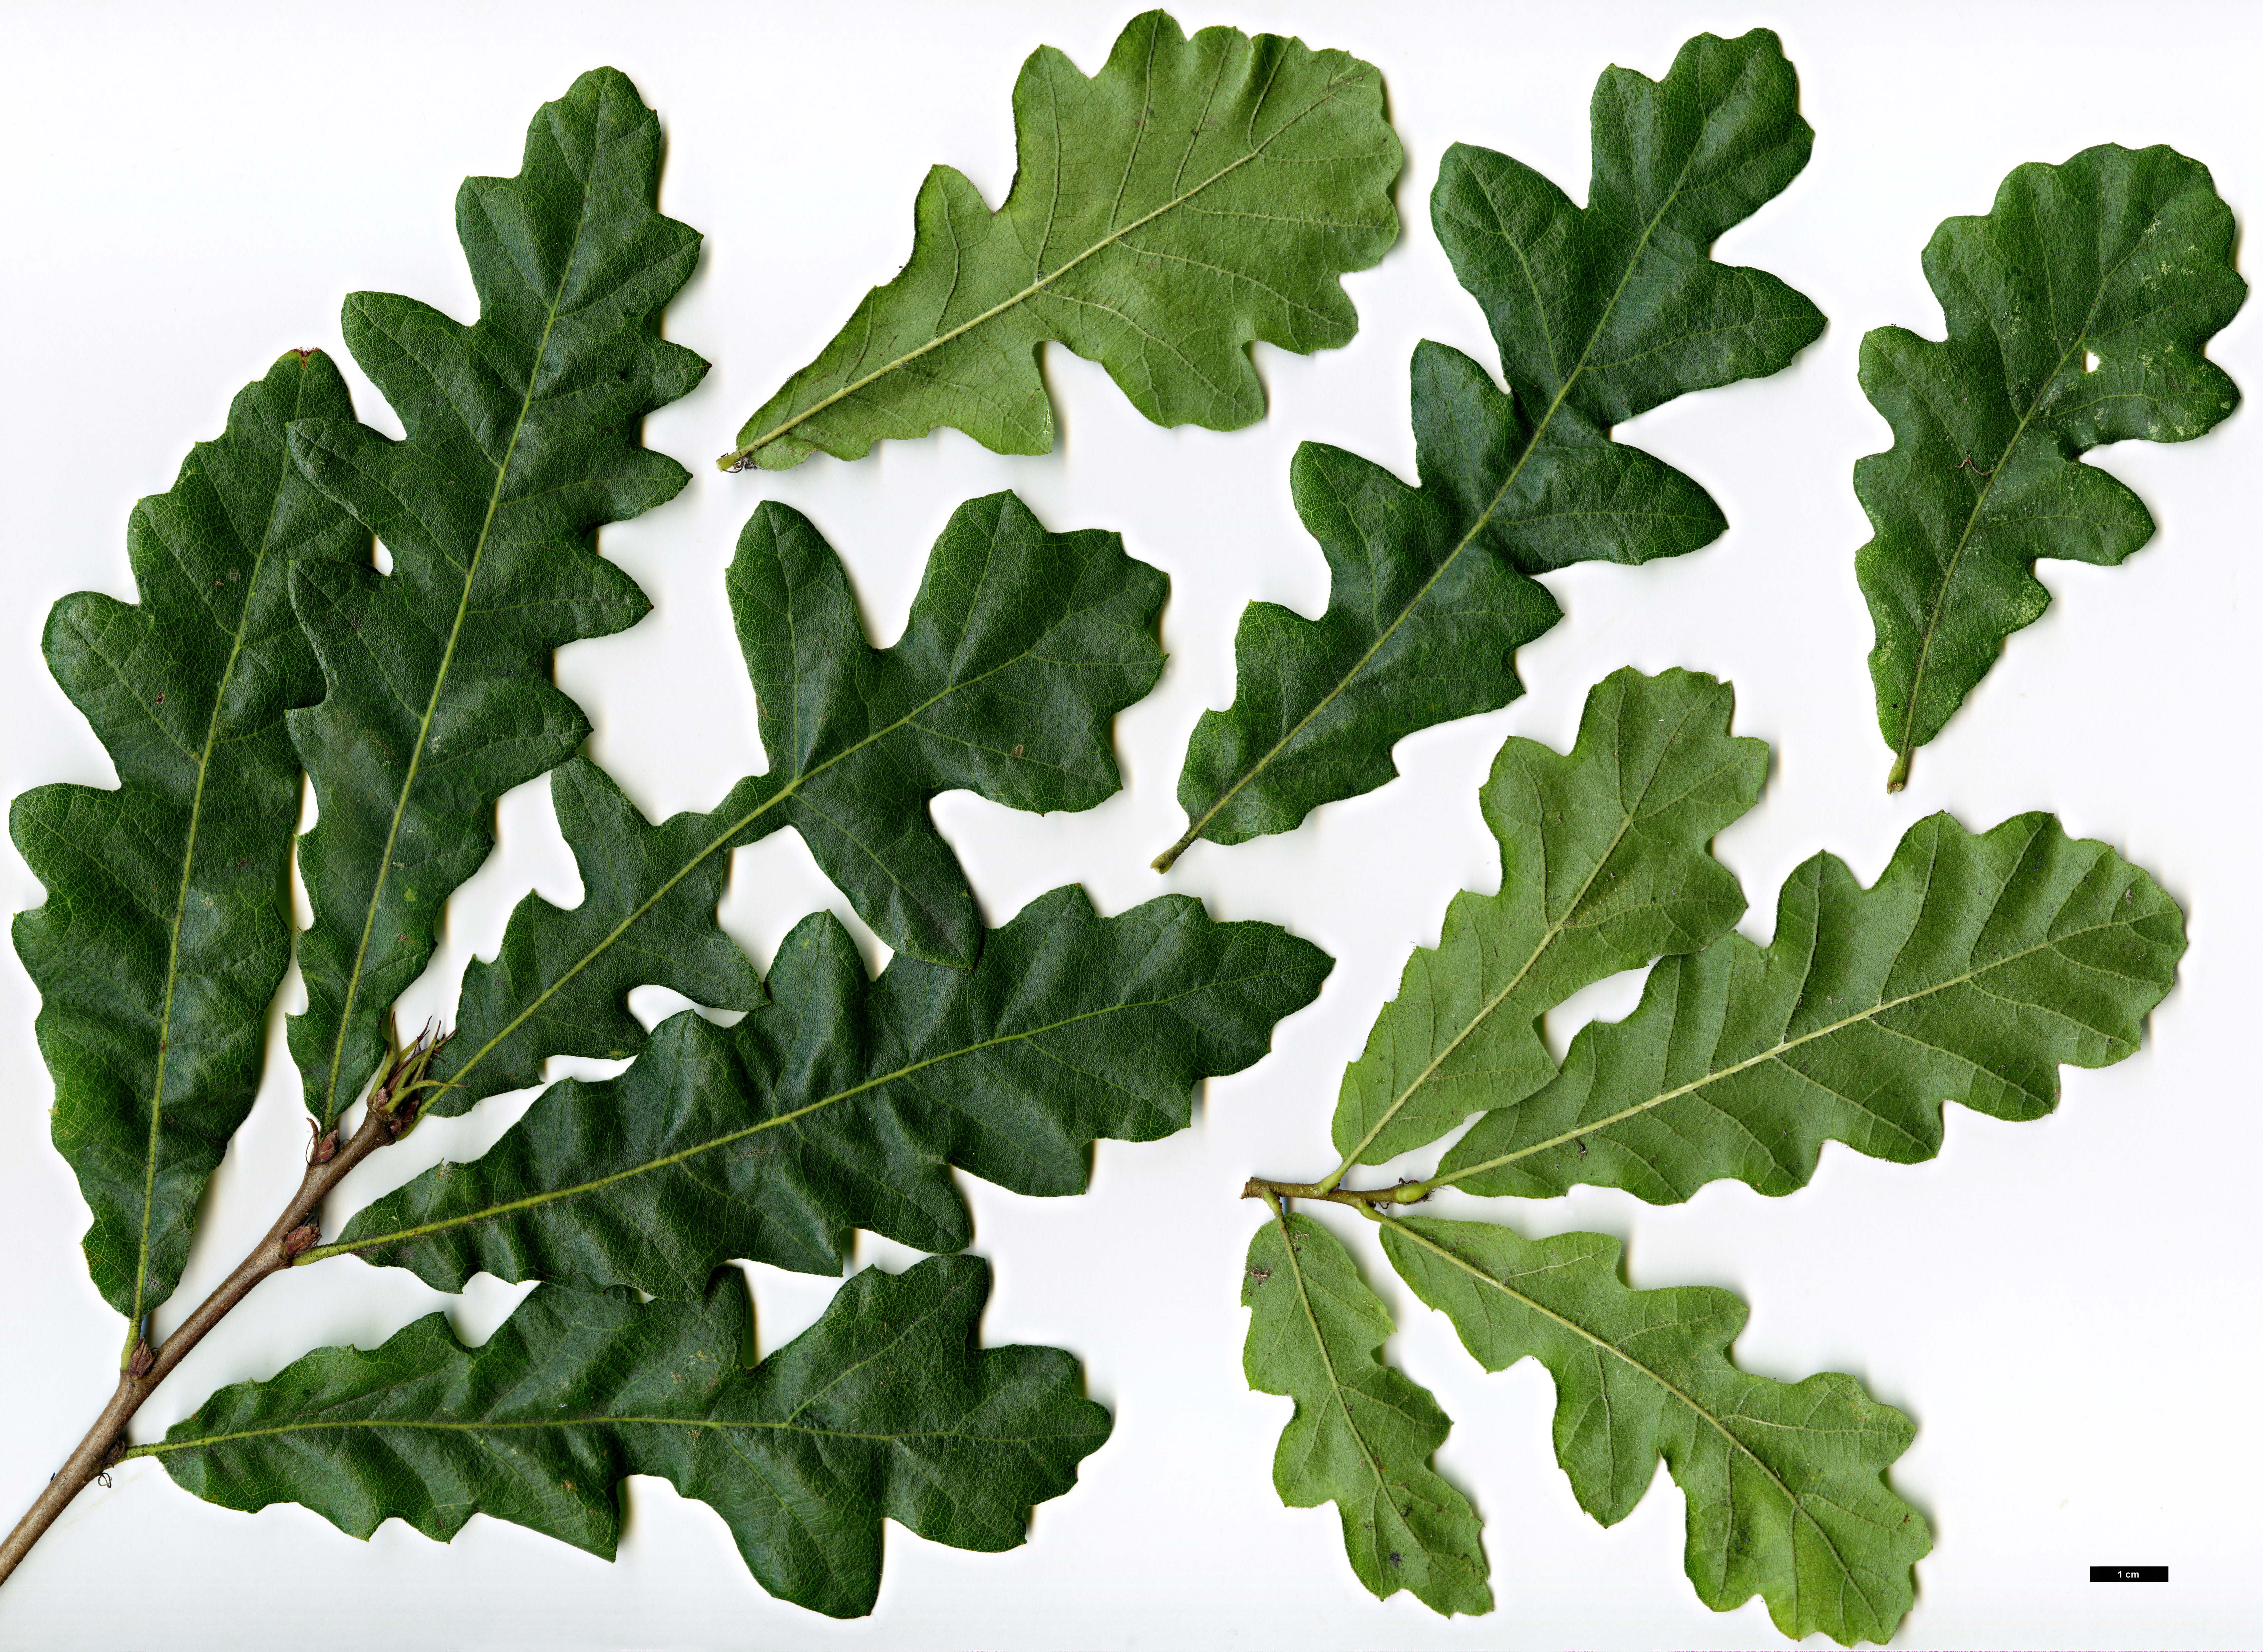 High resolution image: Family: Fagaceae - Genus: Quercus - Taxon: cerris - SpeciesSub: 'Athena'